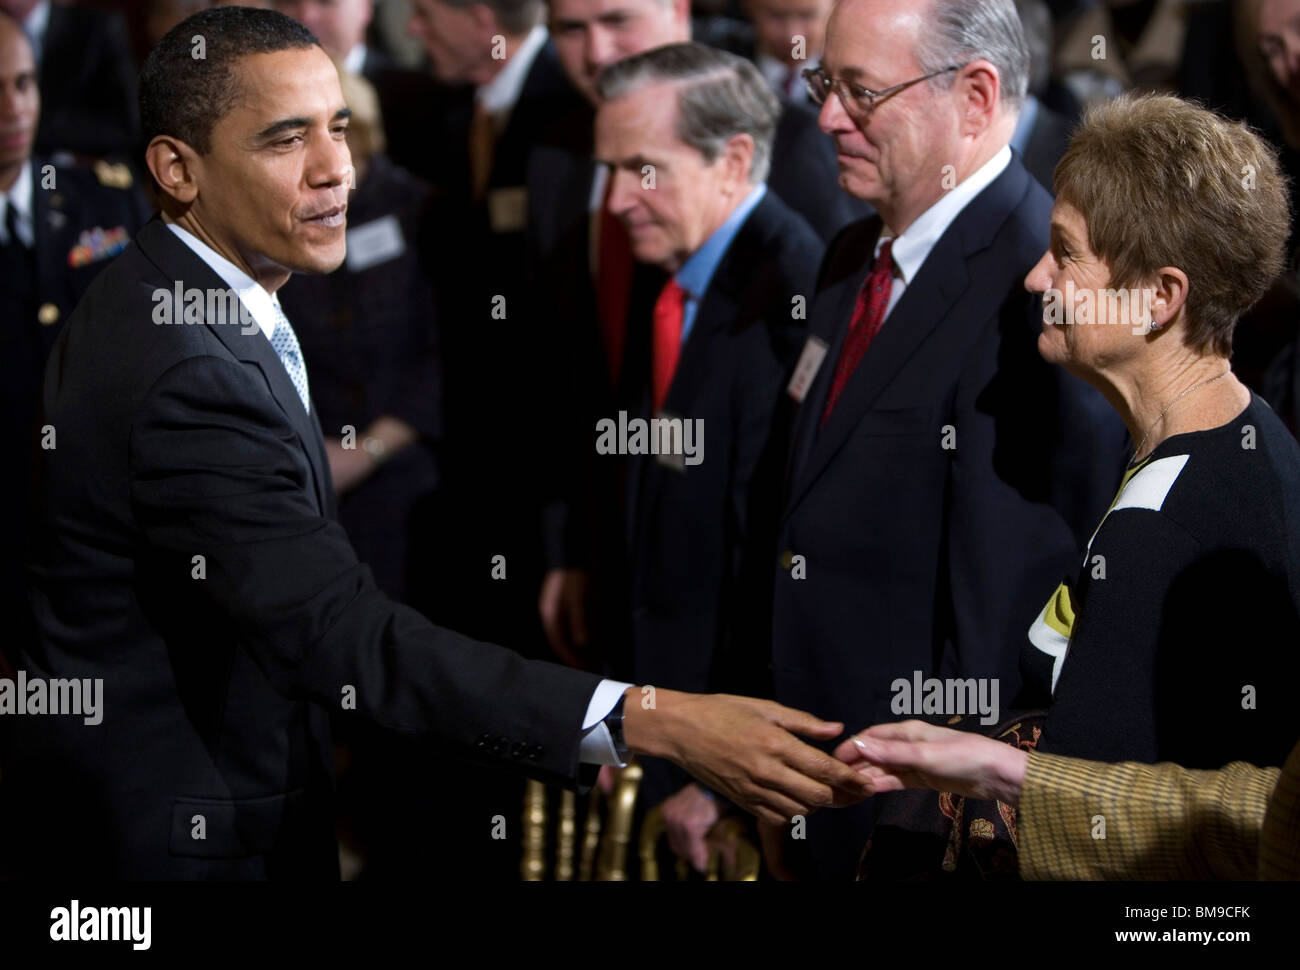 13 février 2009 – Washington, D.C. – le président Barack Obama fait des remarques sur le plan de relance économique aux membres du Business Council dans la salle est de la Maison Blanche. Banque D'Images